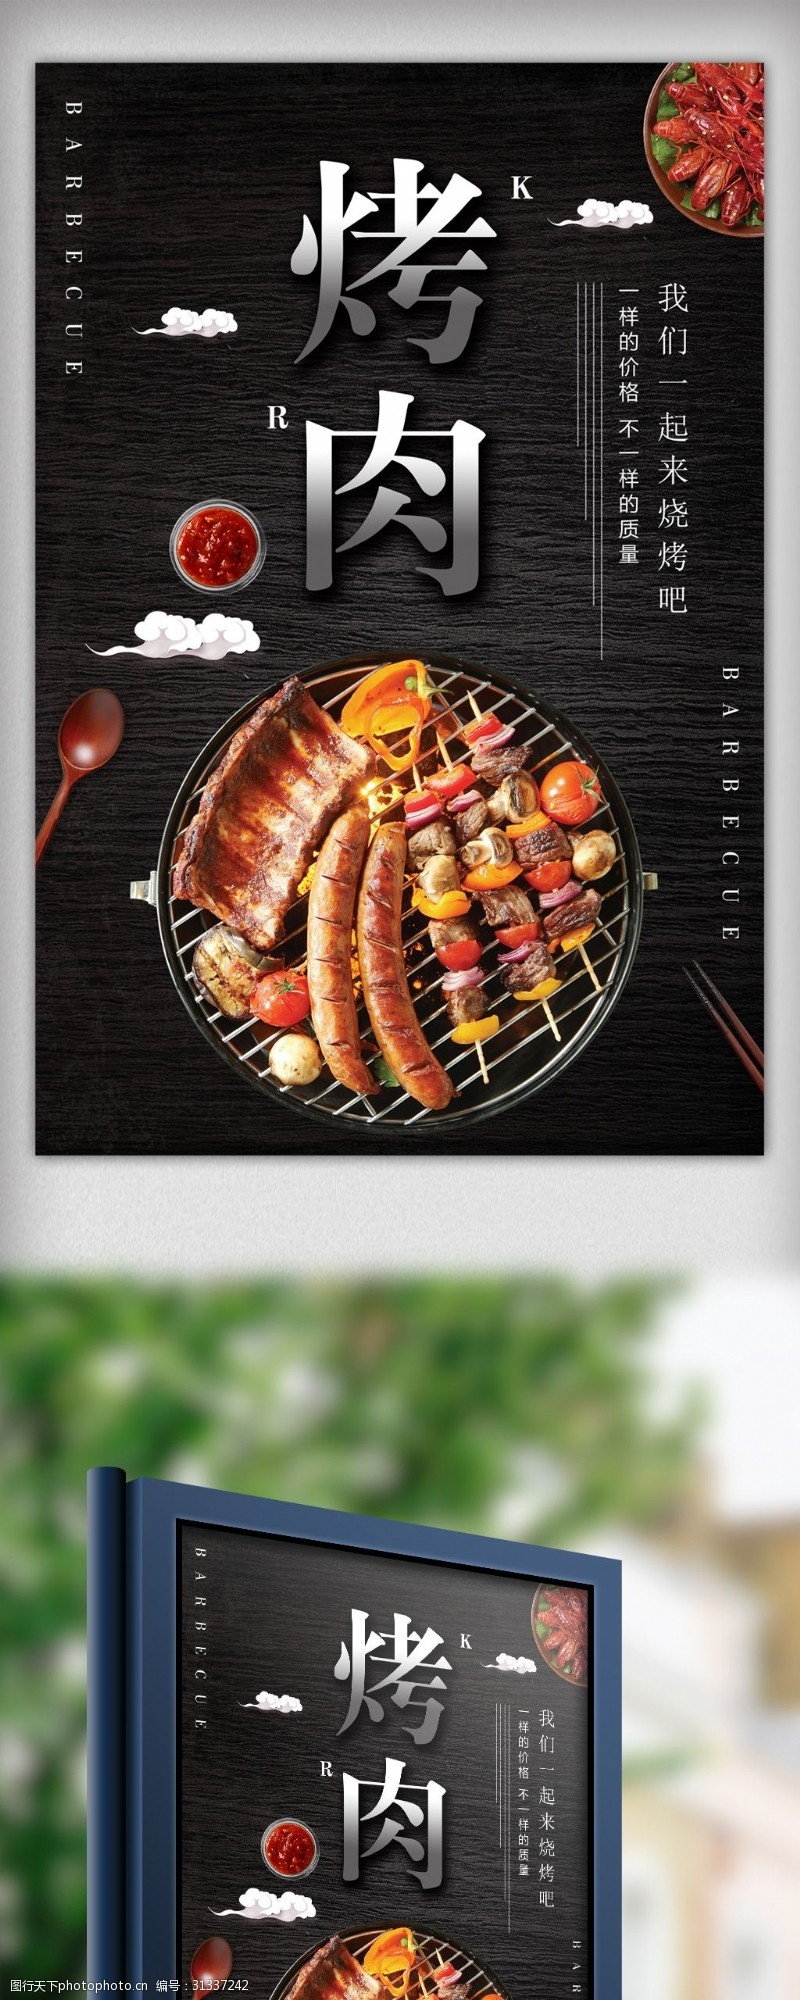 酒色财气黑色大气烤肉美食海报设计